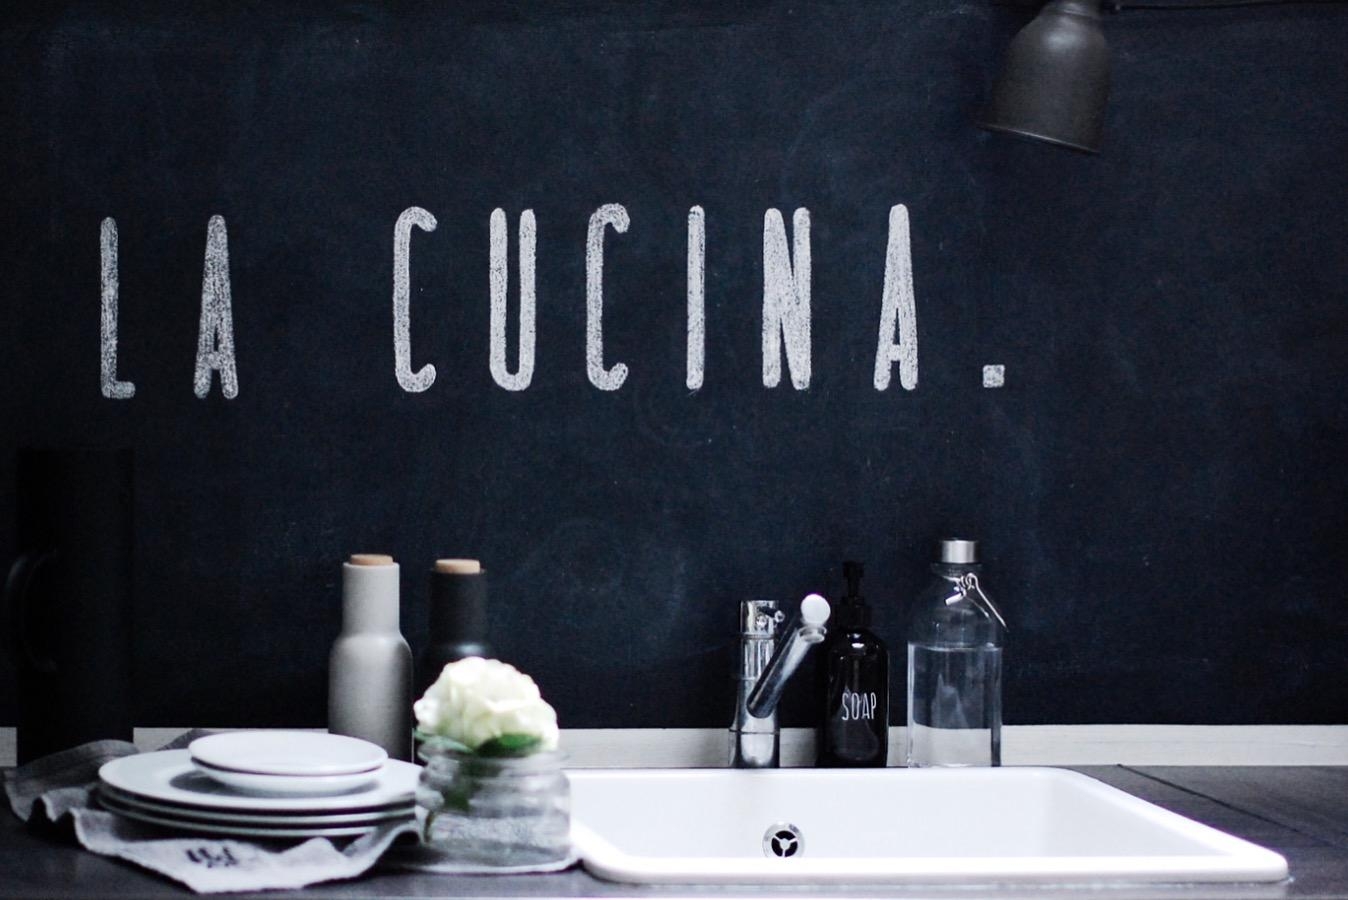 Neuer #schriftzug in der #küche #küchenliebe #blackwall #chalkboard #flowers #kitchen #interior #lettering 